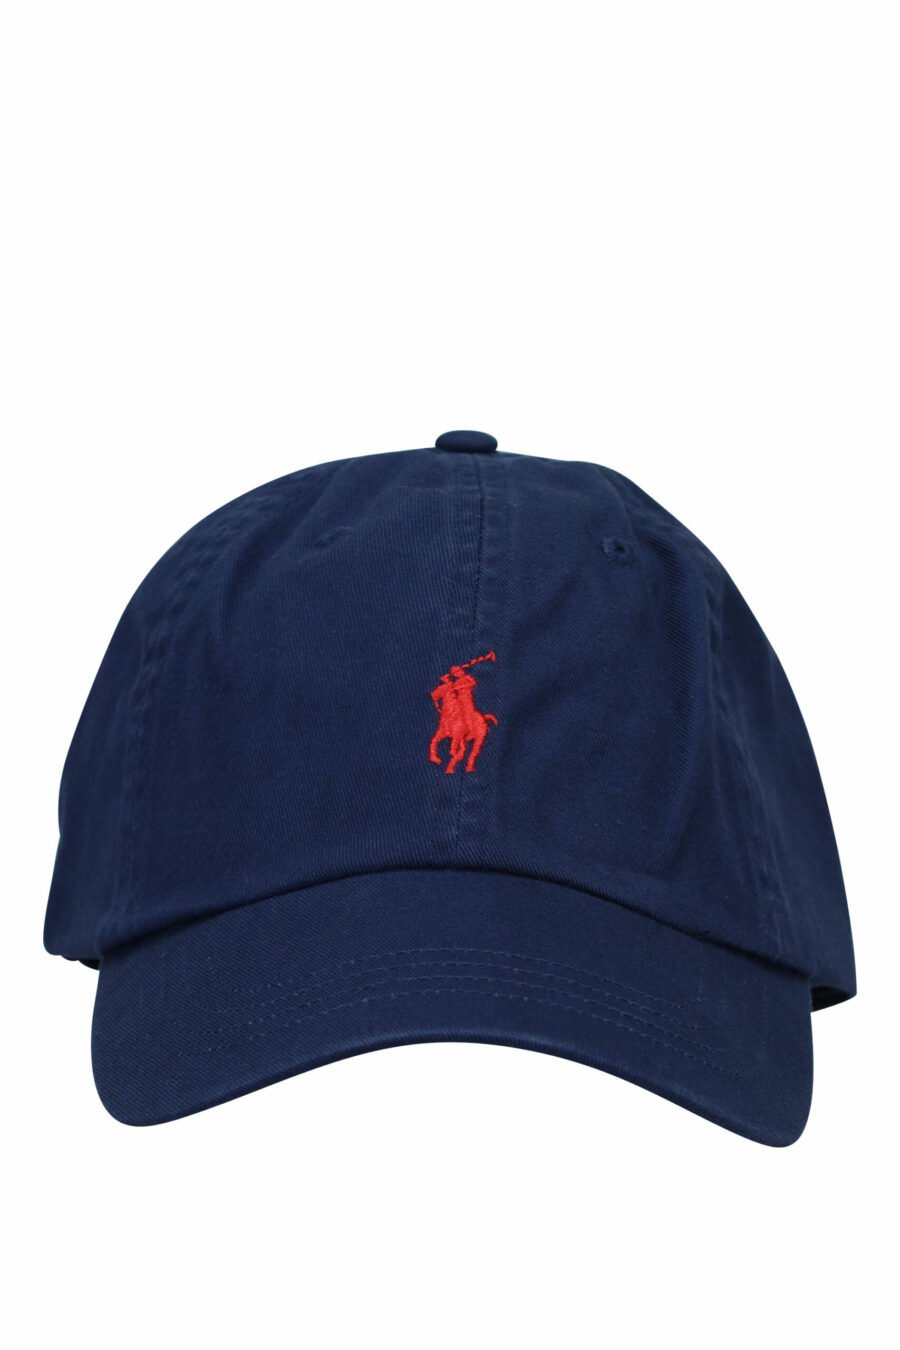 Dunkelblaue Mütze mit Mini-Logo "Polo" - 3616531139422 skaliert